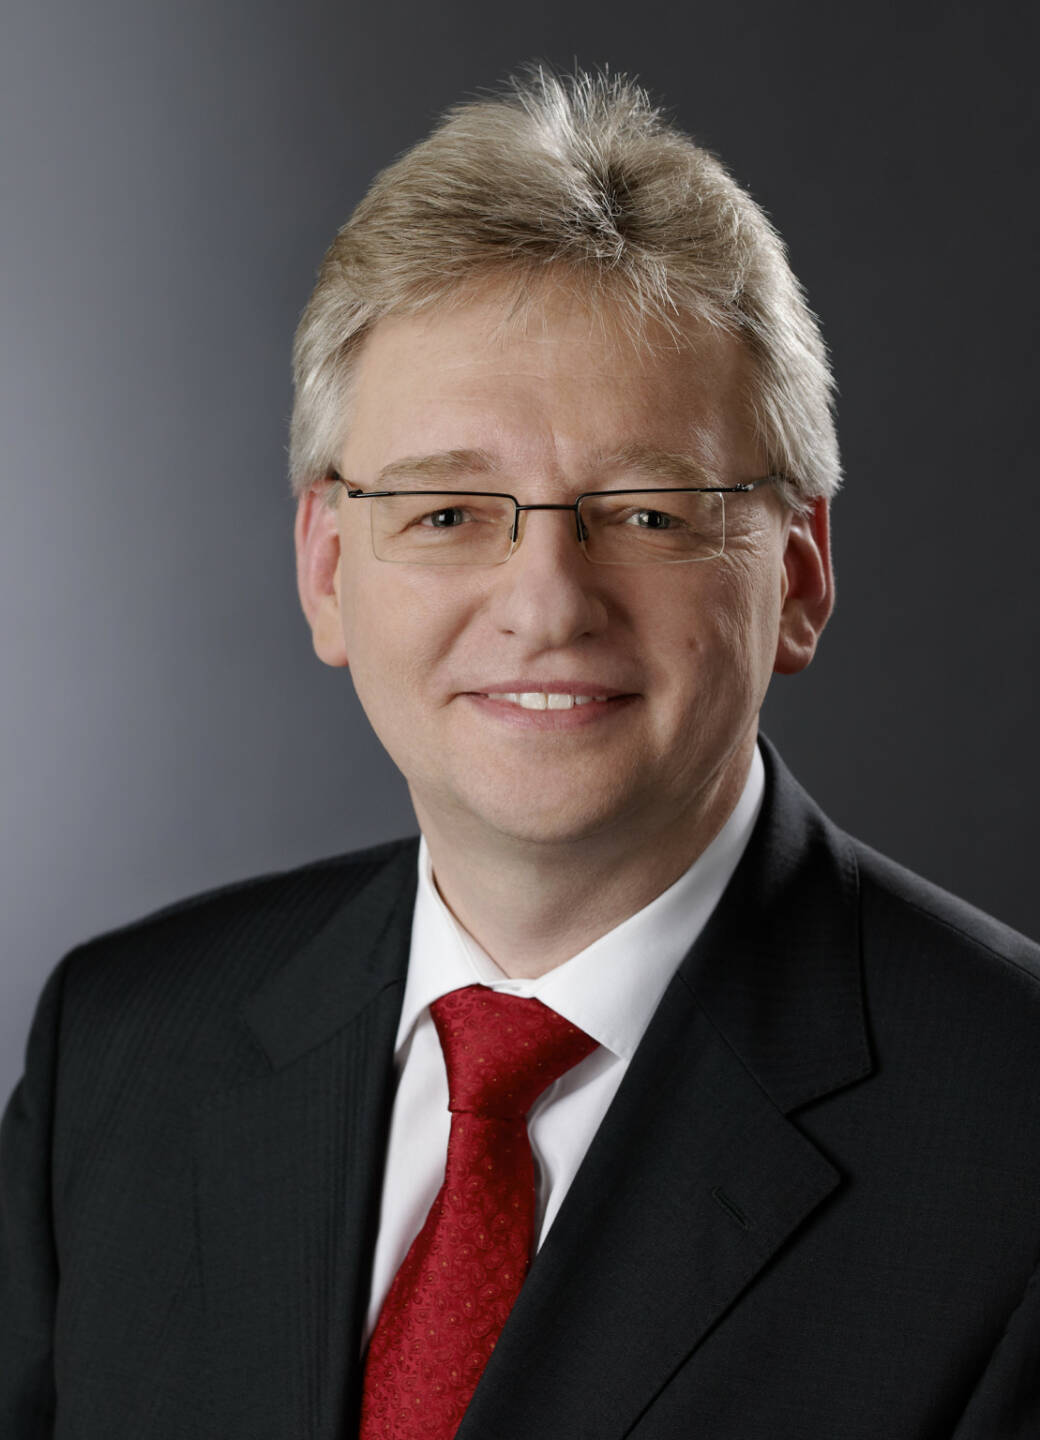 Helmut Matschi, Mitglied des Vorstands der Continental AG. Verantwortlich fuer die Division Interior